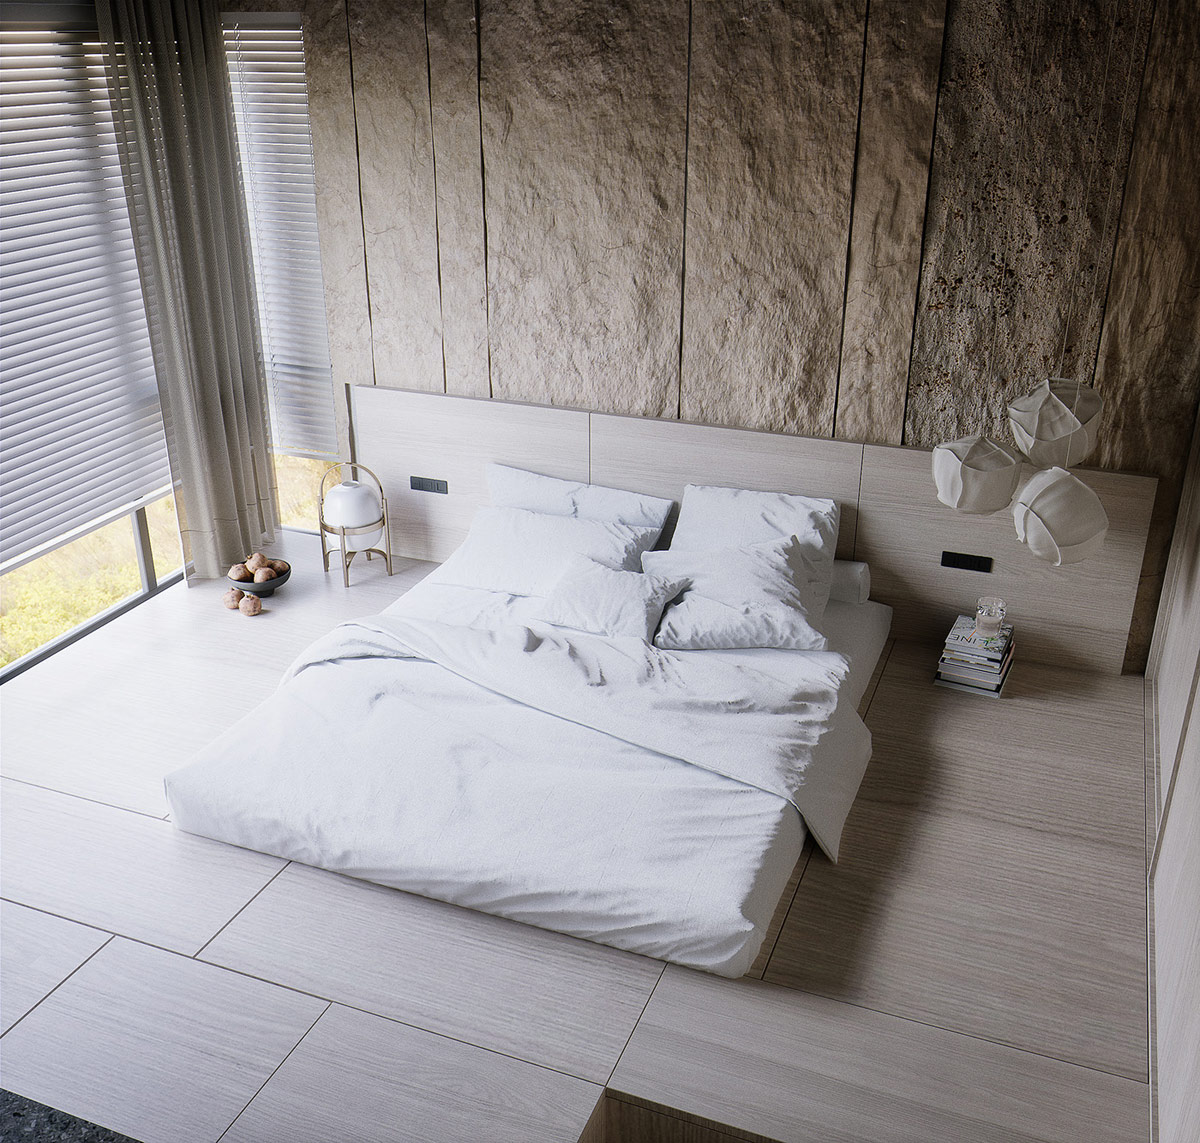 floor-bed-design.jpg (1200×1143)